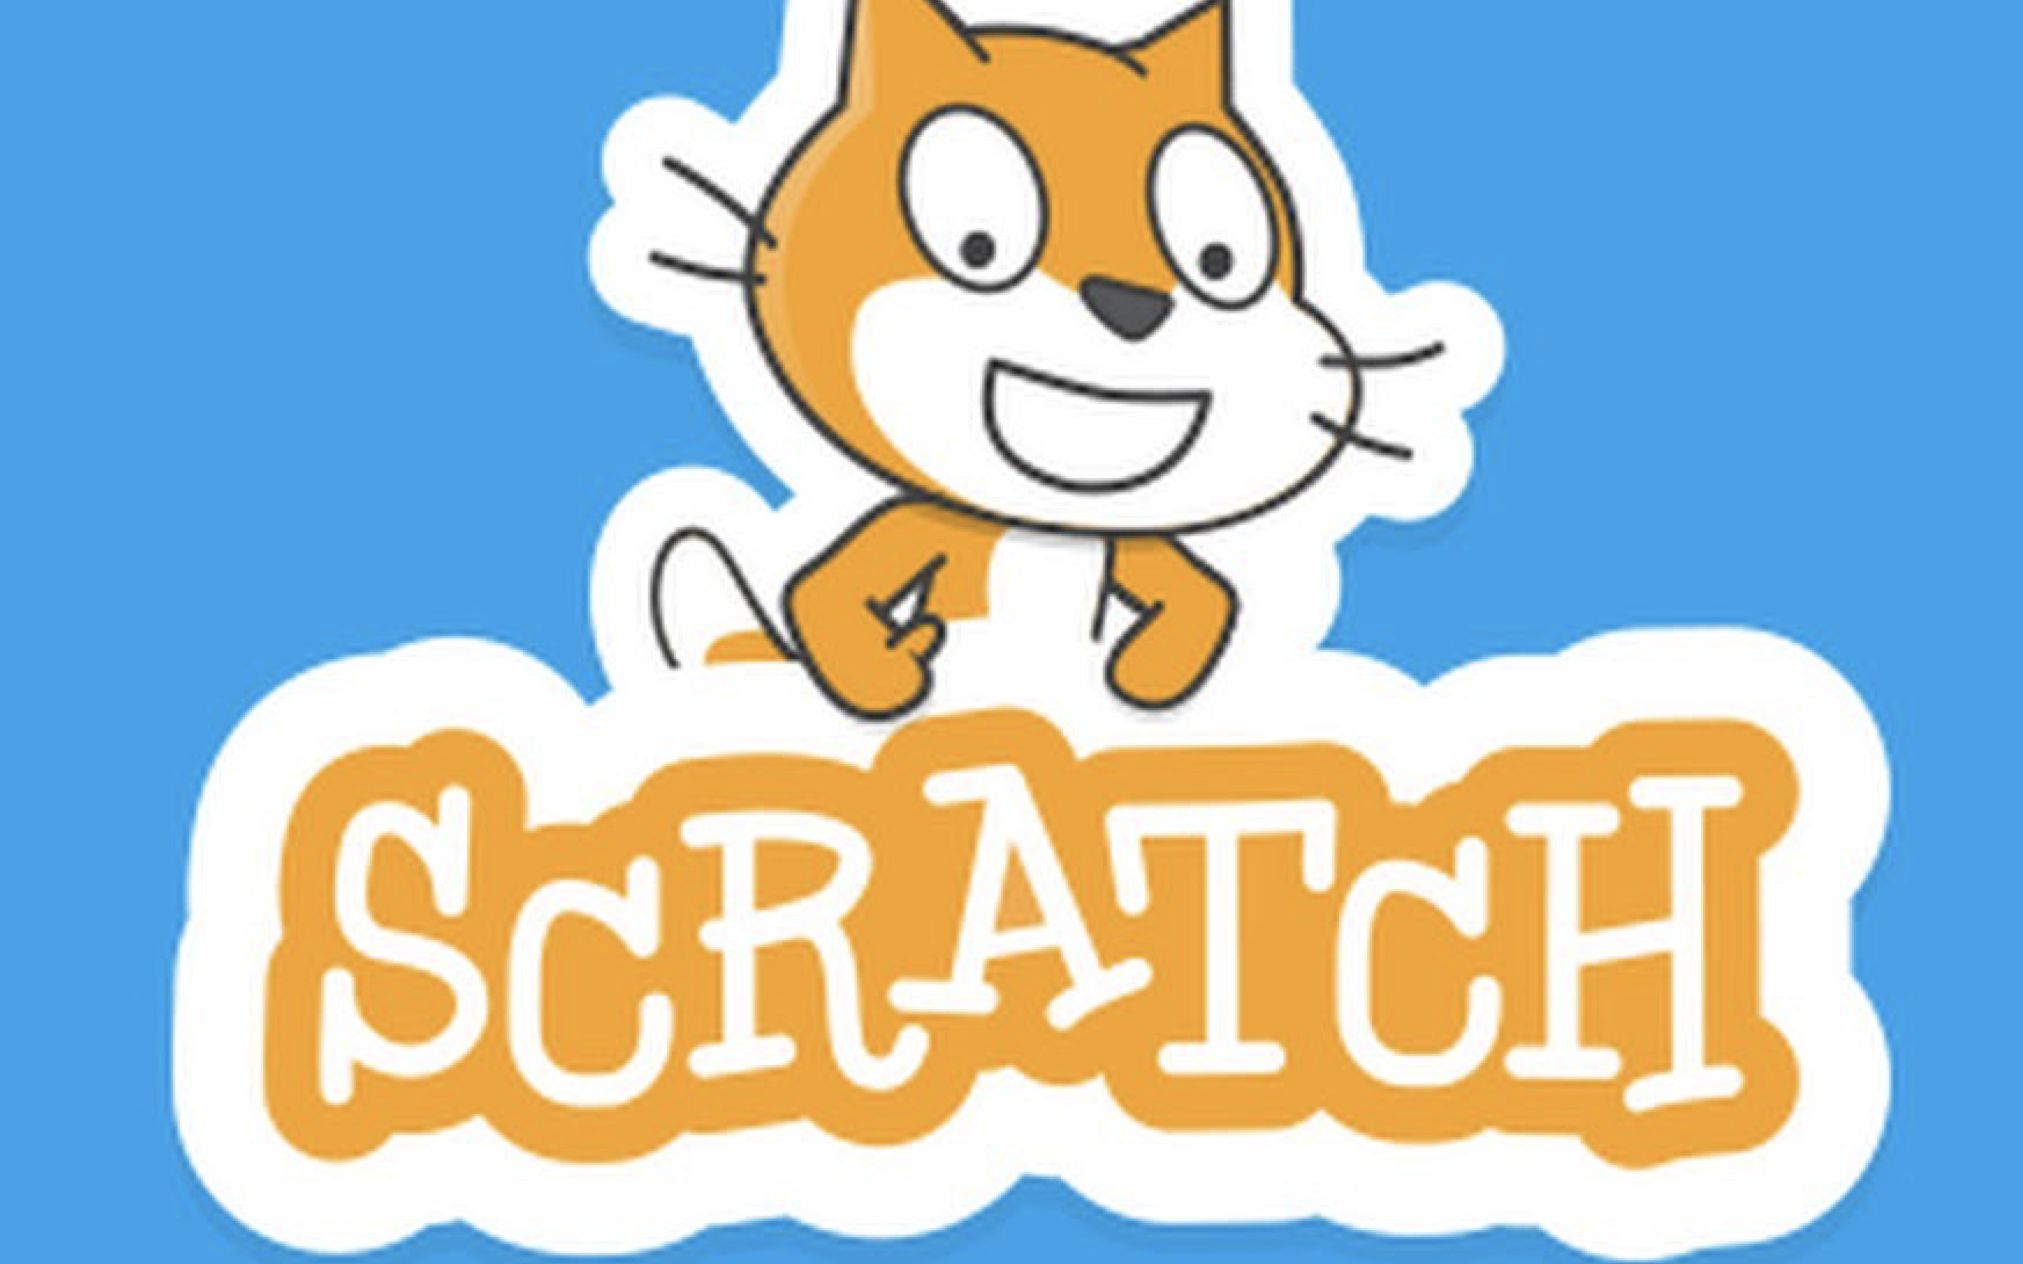 scratch平台二次开发